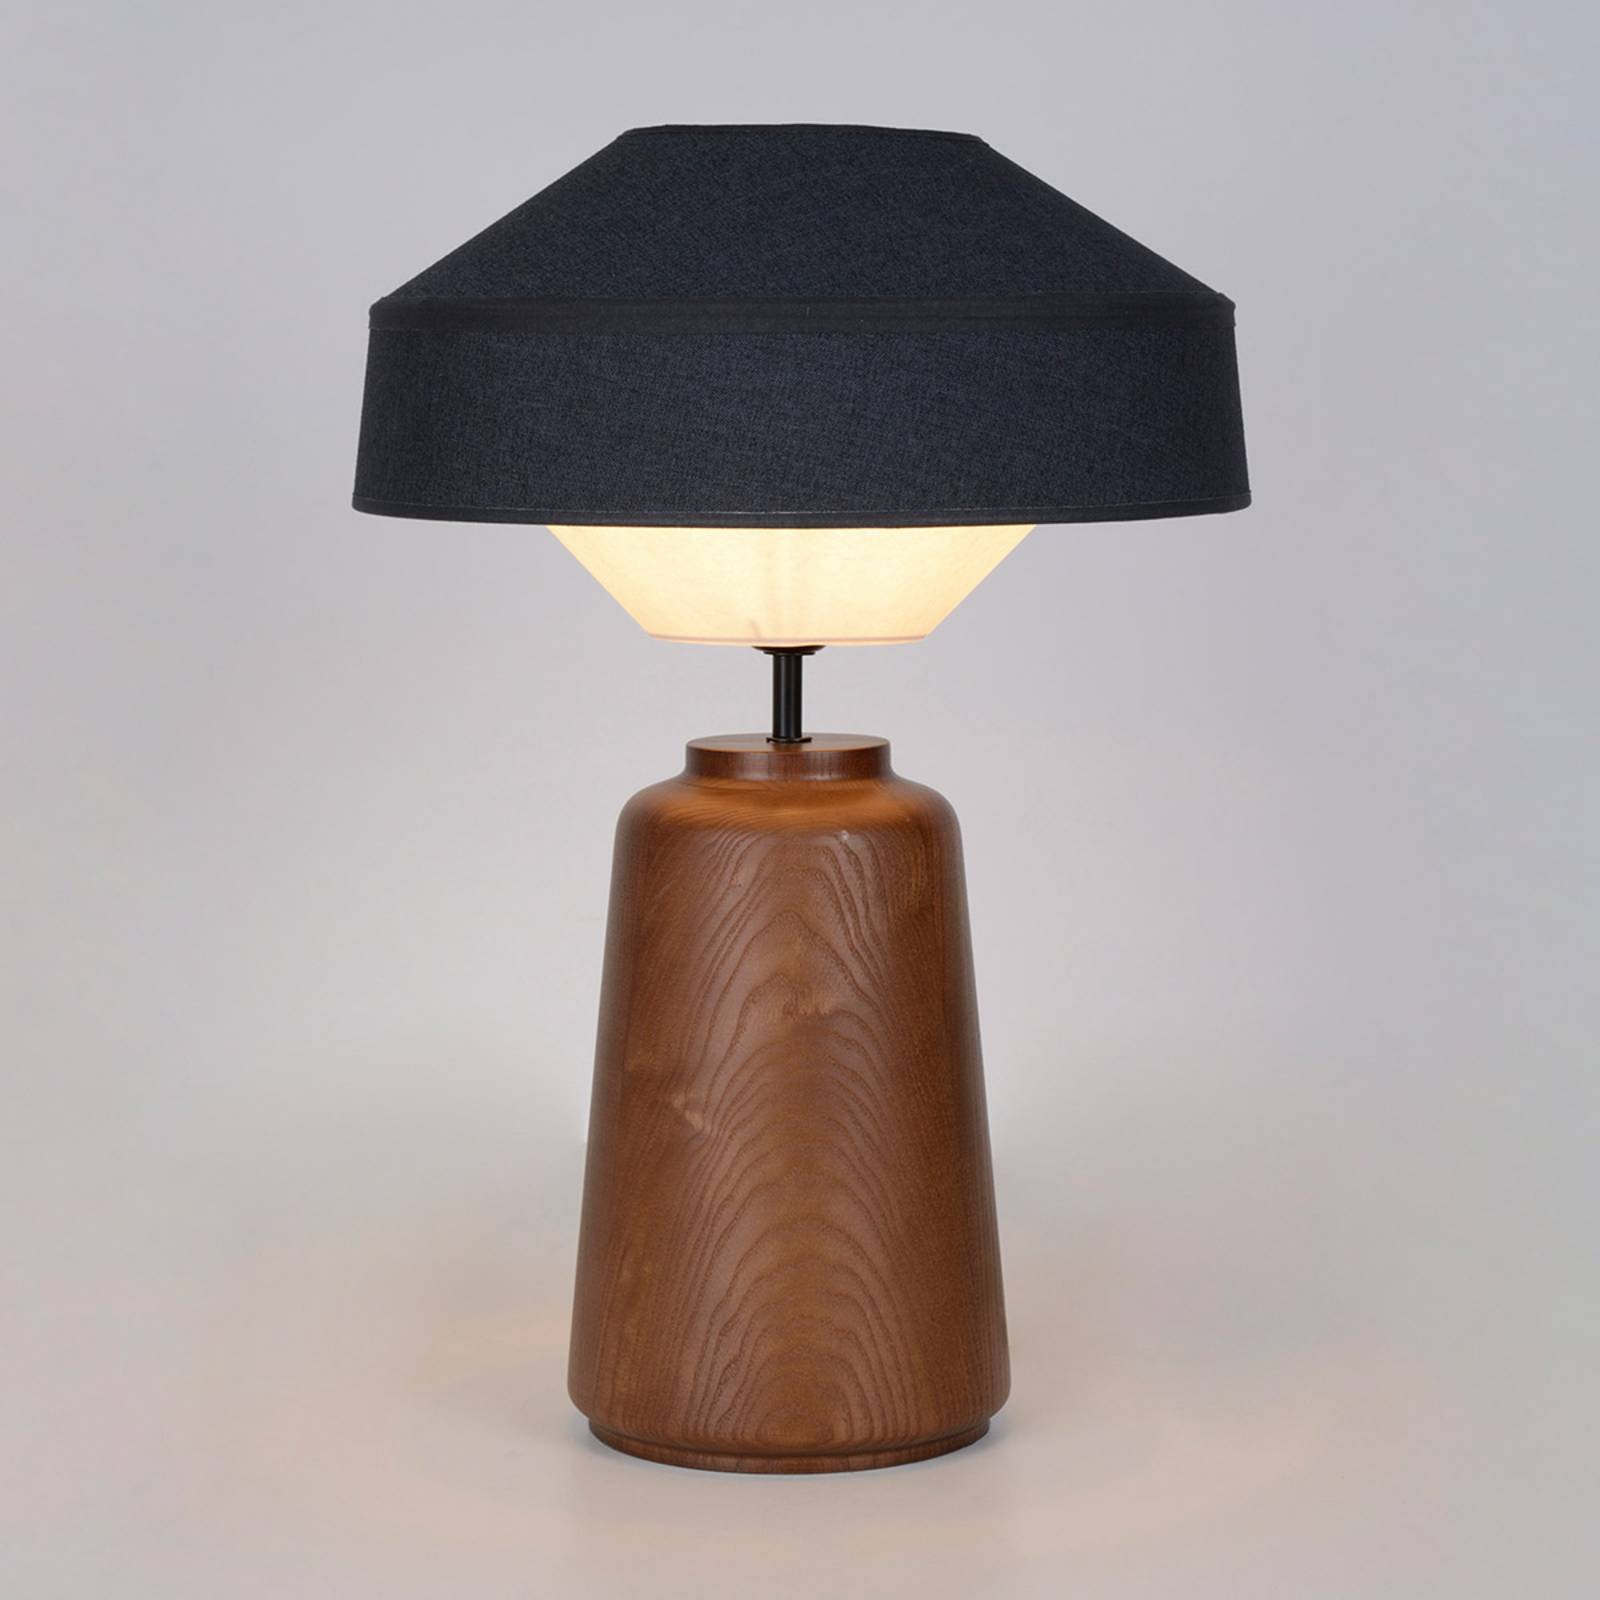 E-shop MARKET SET Mokuzaï stolová lampa suna, výška 55 cm